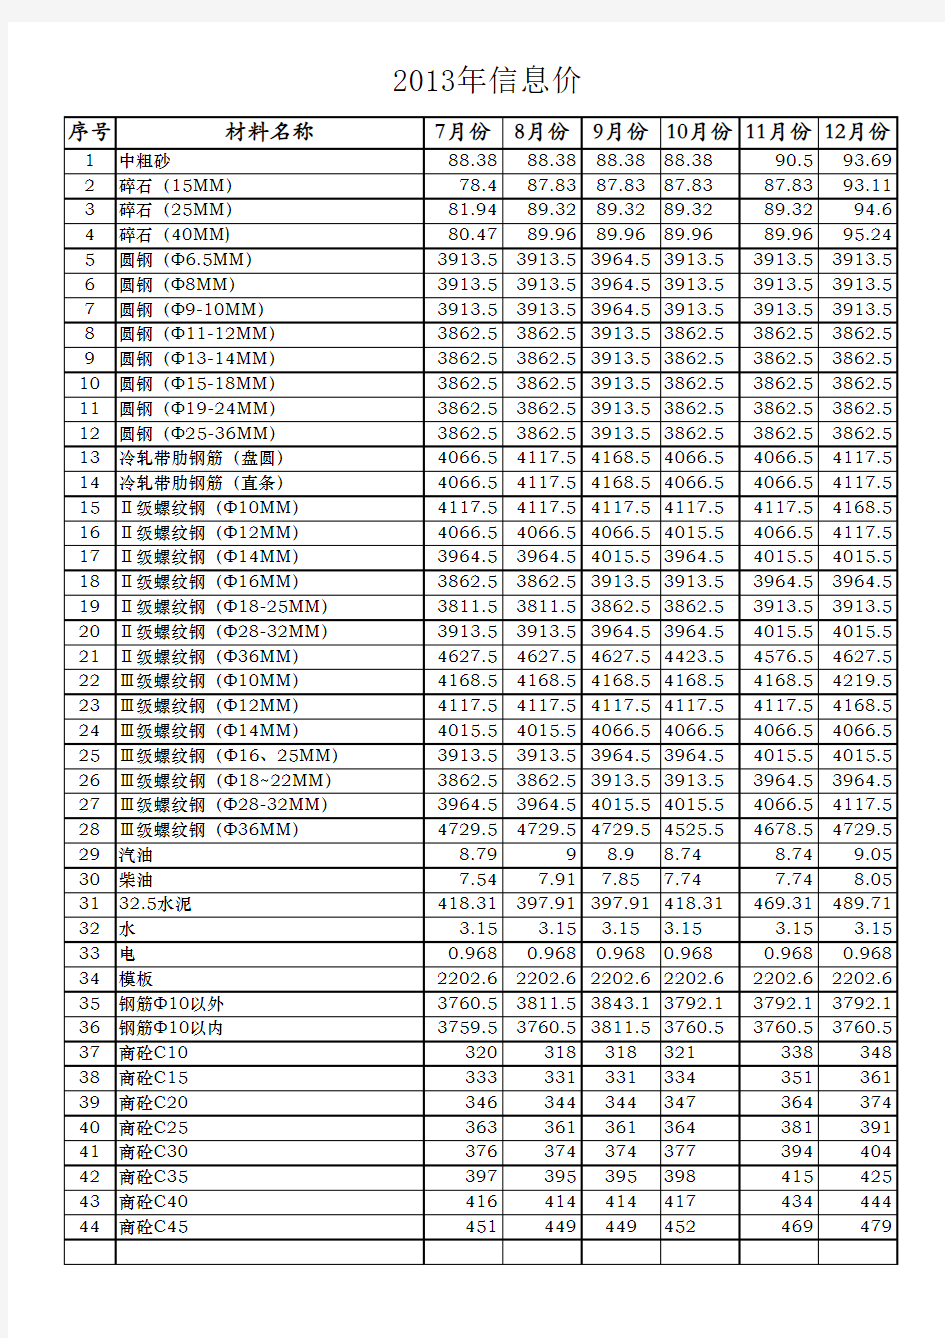 武汉市2013年主要材料信息价(来源《武汉工程造价》信息版).xlsx